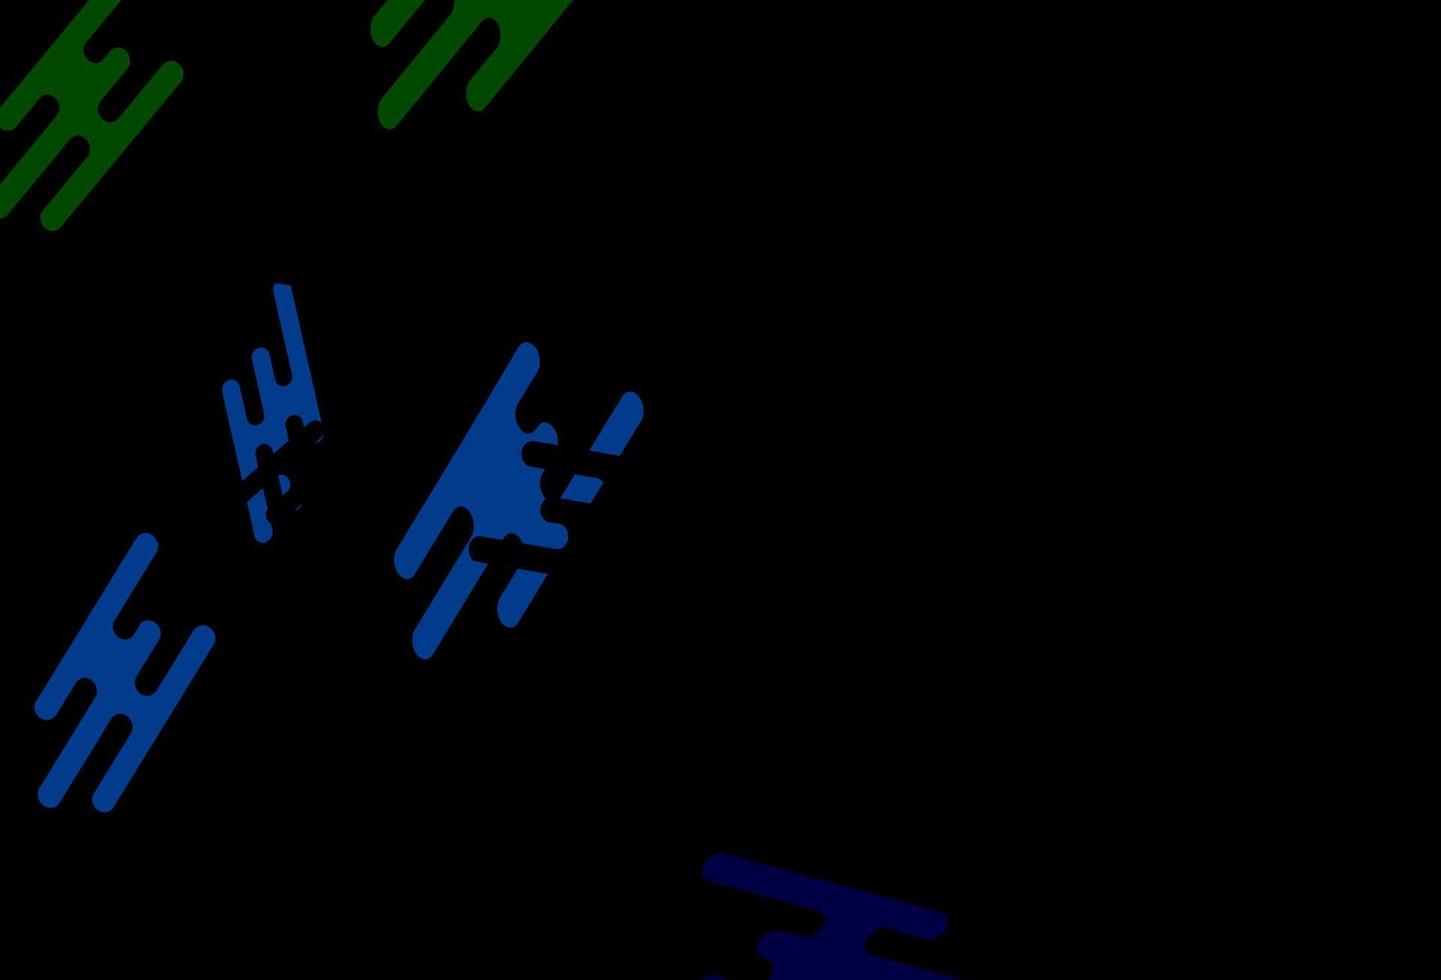 dunkles mehrfarbiges, regenbogenfarbenes Vektorlayout mit flachen Linien. vektor